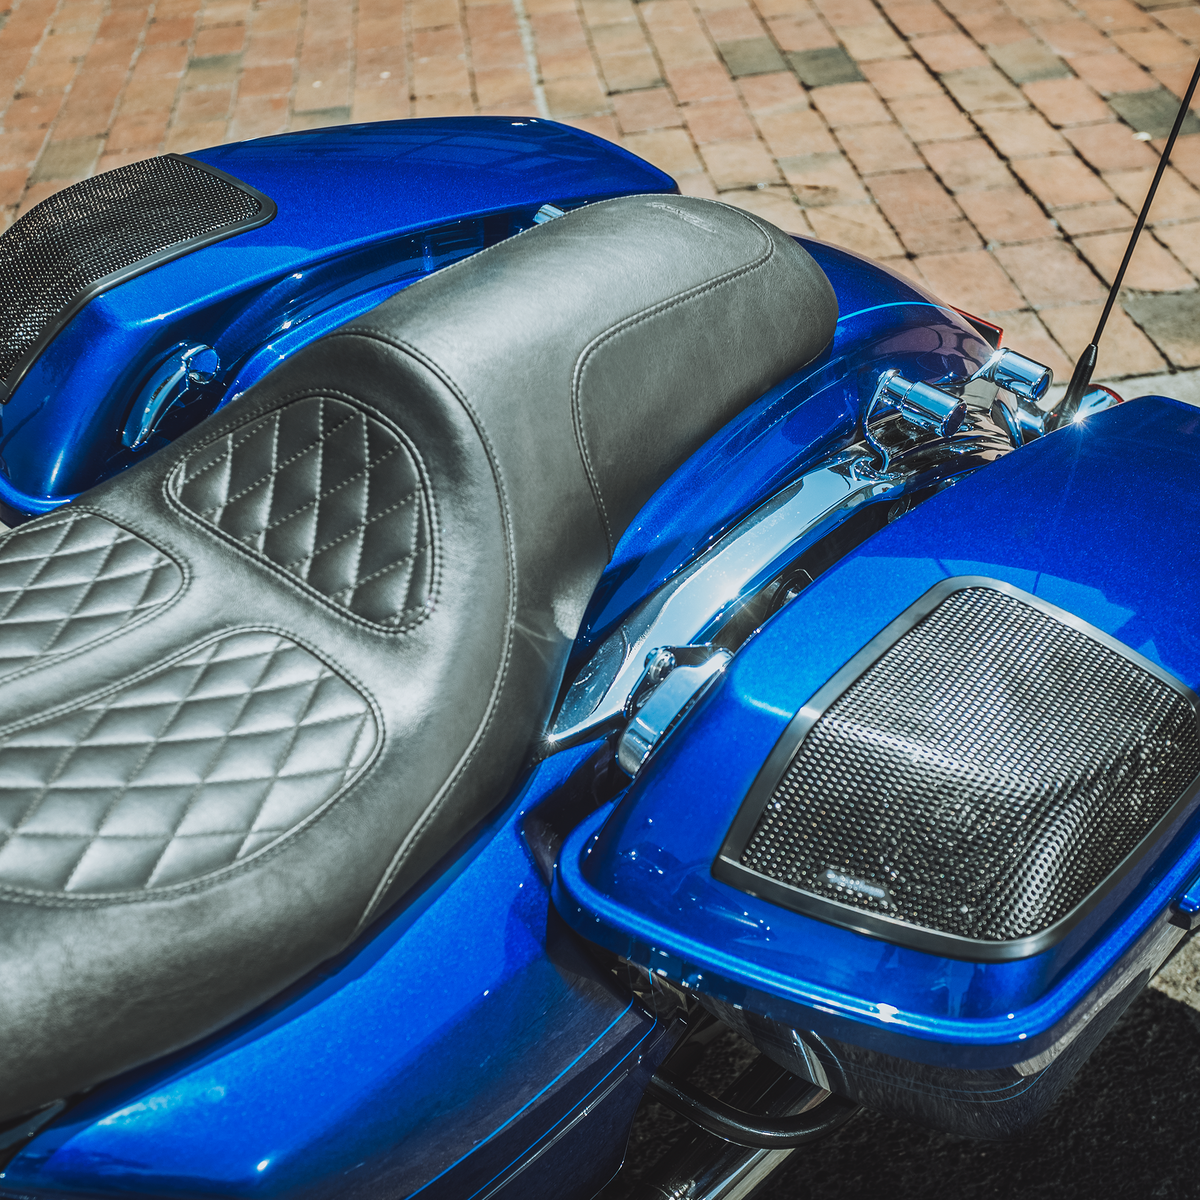 Power Harley-Davidson Saddlebag Audio Kit (2014+)